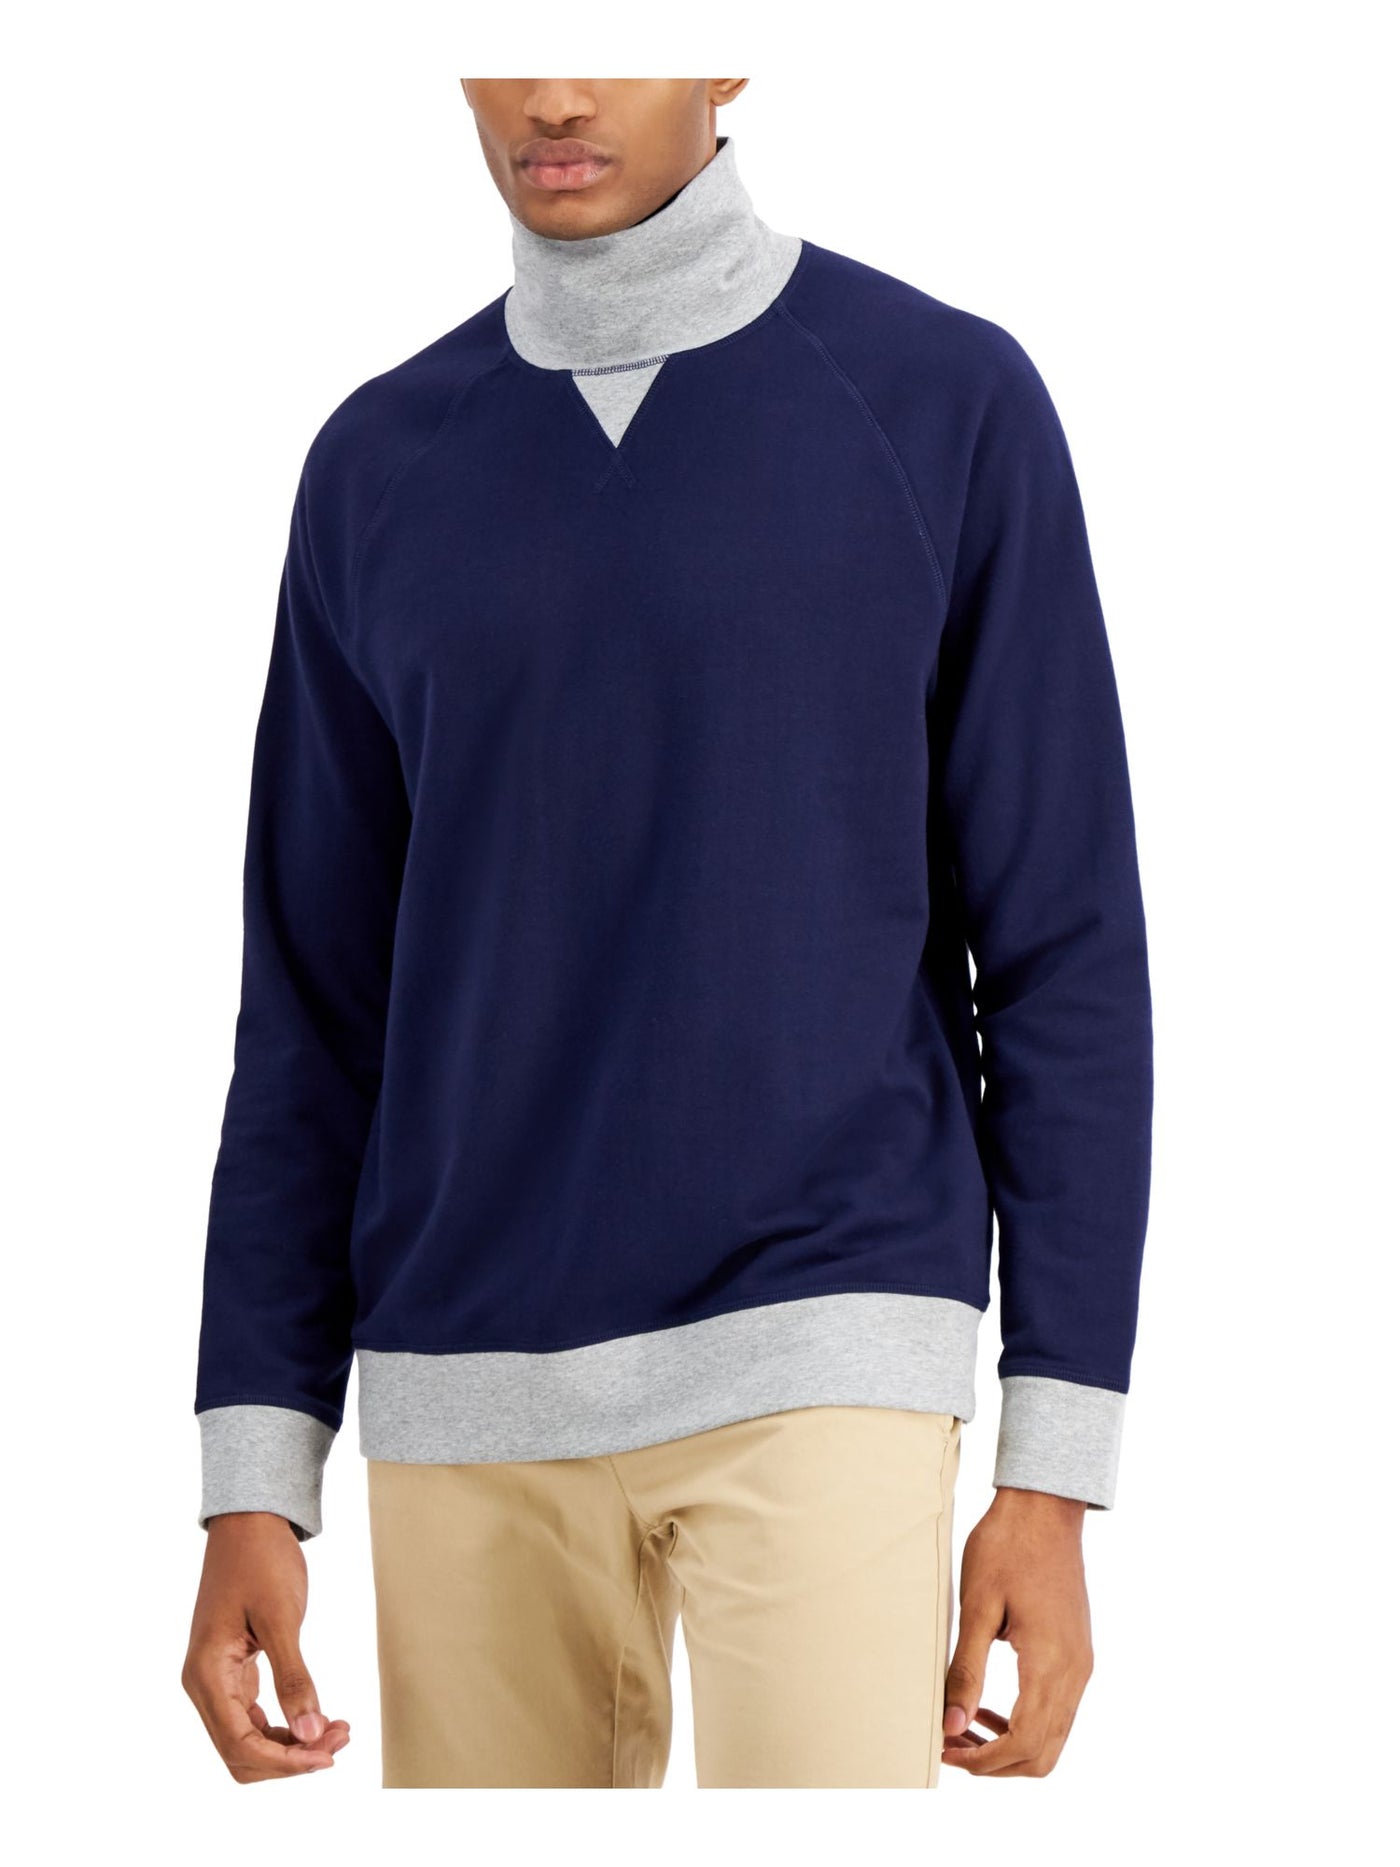 CLUBROOM Mens Navy Color Block Turtle Neck Classic Fit Fleece Sweatshirt XXL